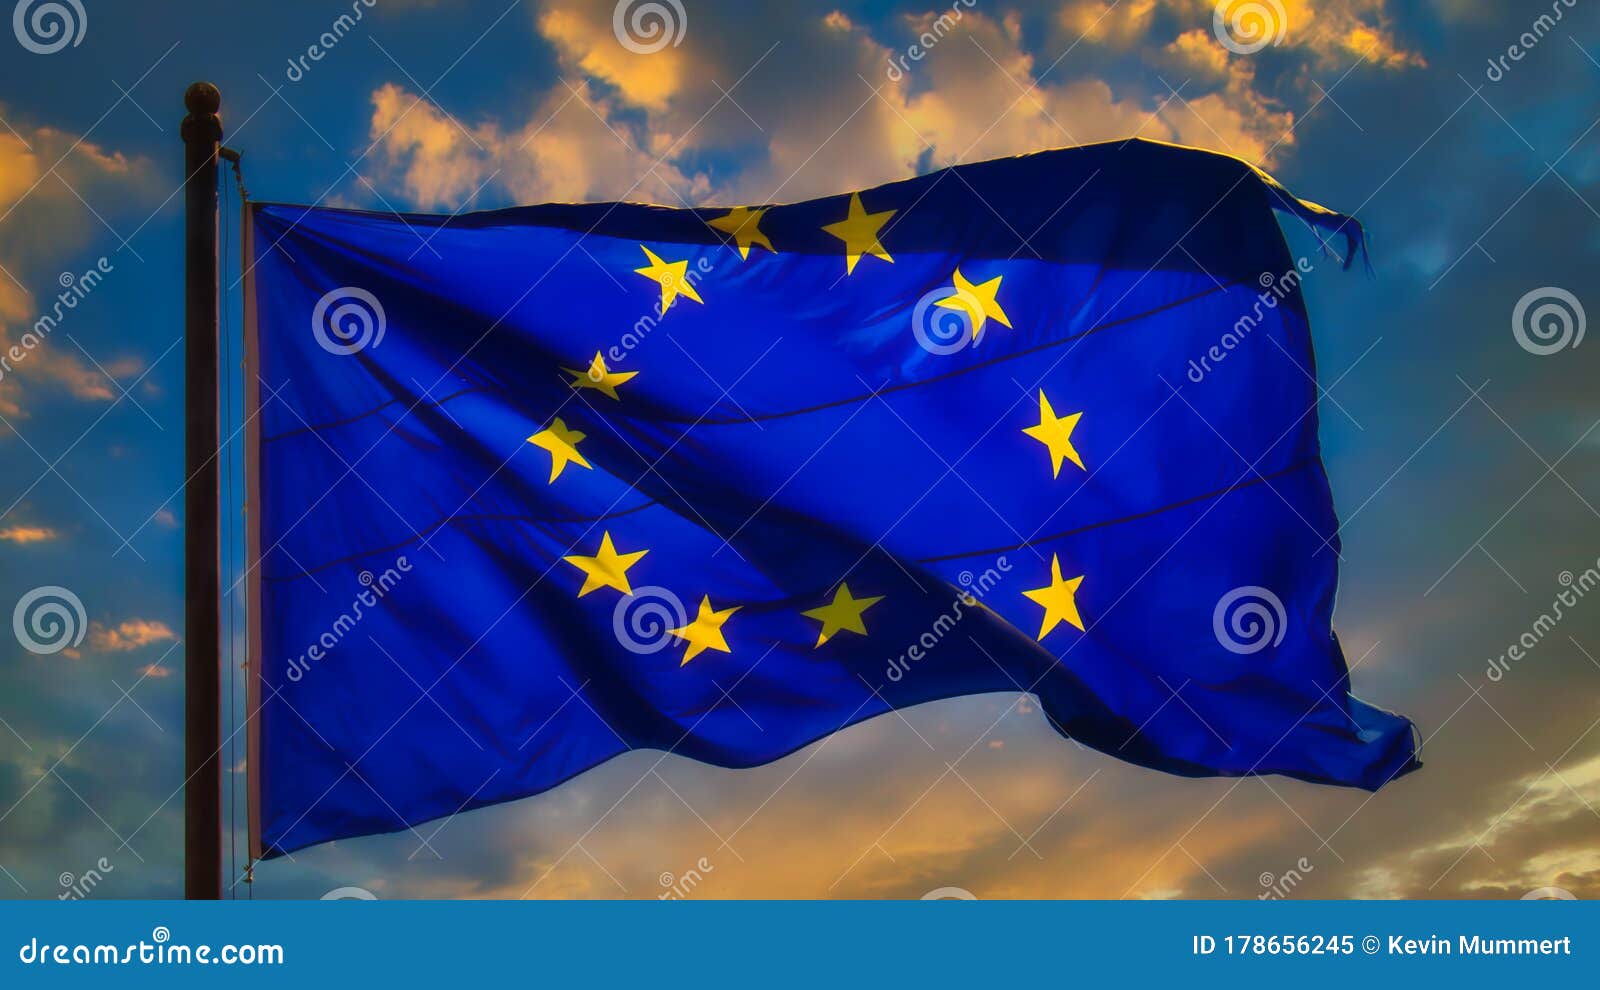 Geografische Lage – Europäische Union. Ein Wimpel In Form Einer Flagge Der  Europäischen Union, Umgeben Von Einer Gruppe Weißer Wimpel, Wird Zufällig  Auf Einer Reflektierenden Oberfläche Platziert. 3d-rendering-grafiken.  Lizenzfreie Fotos, Bilder und